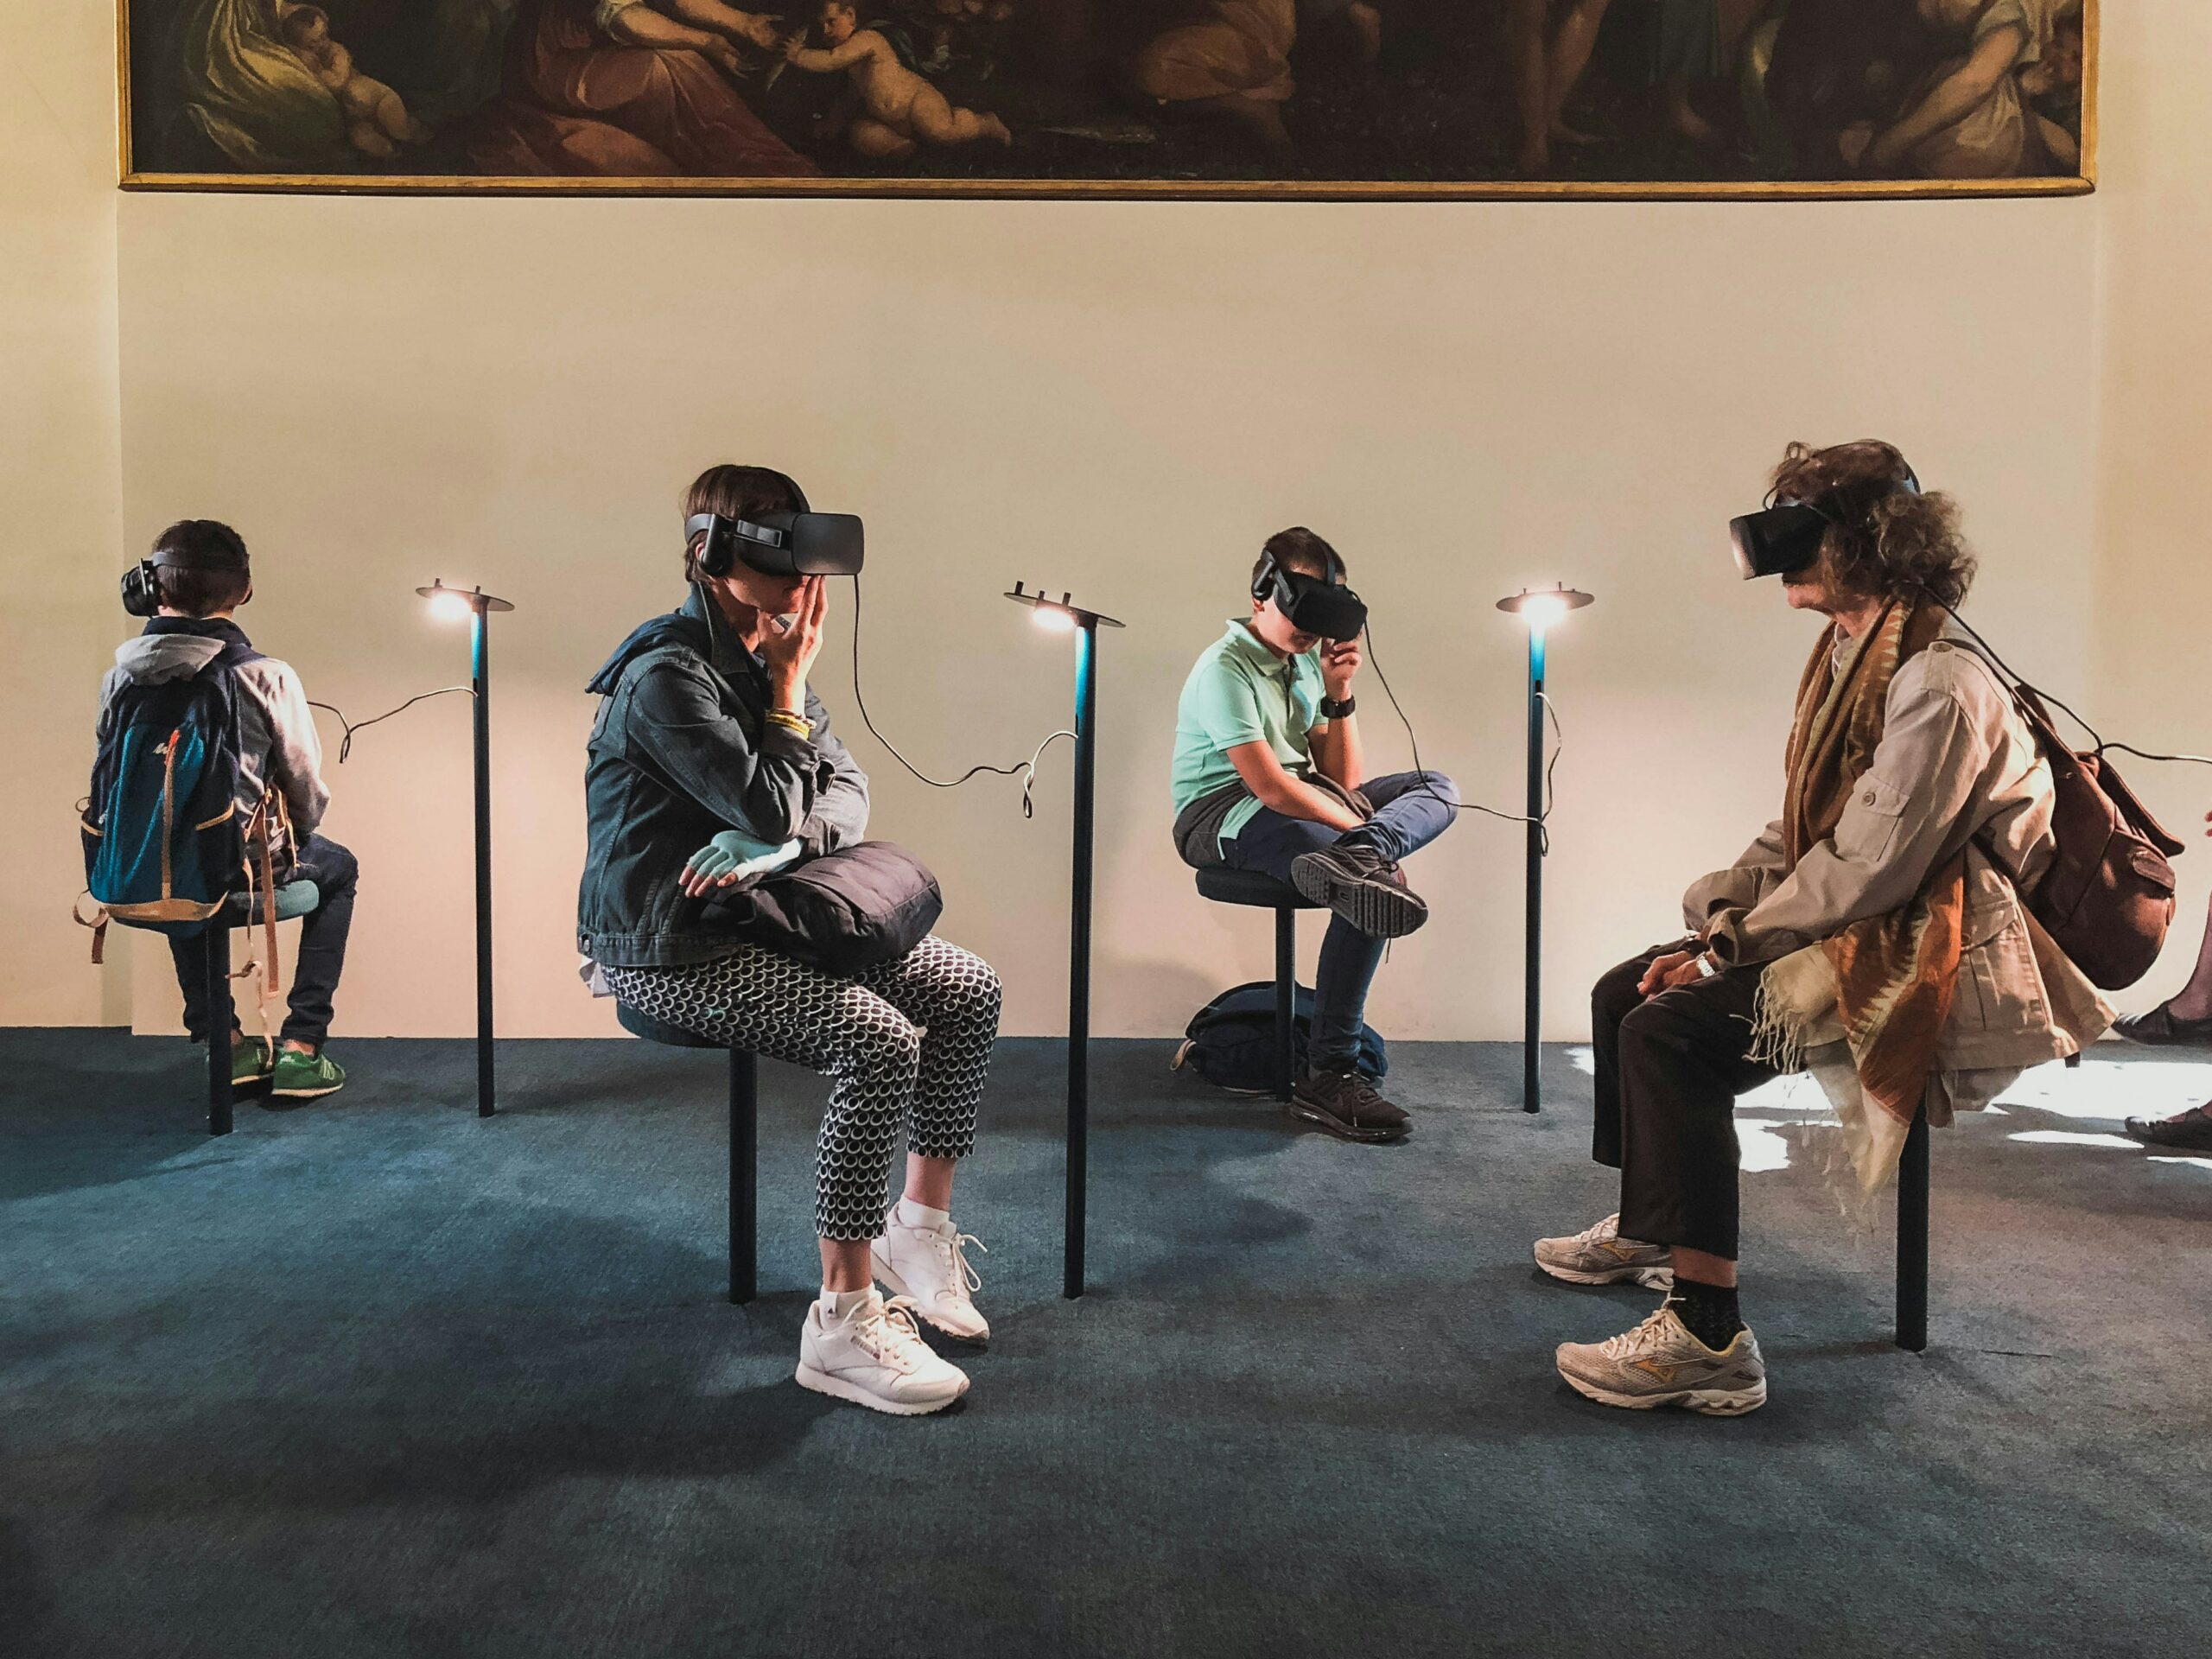 La Réalité Virtuelle dans les Paris Sportifs Un Avenir Immersif